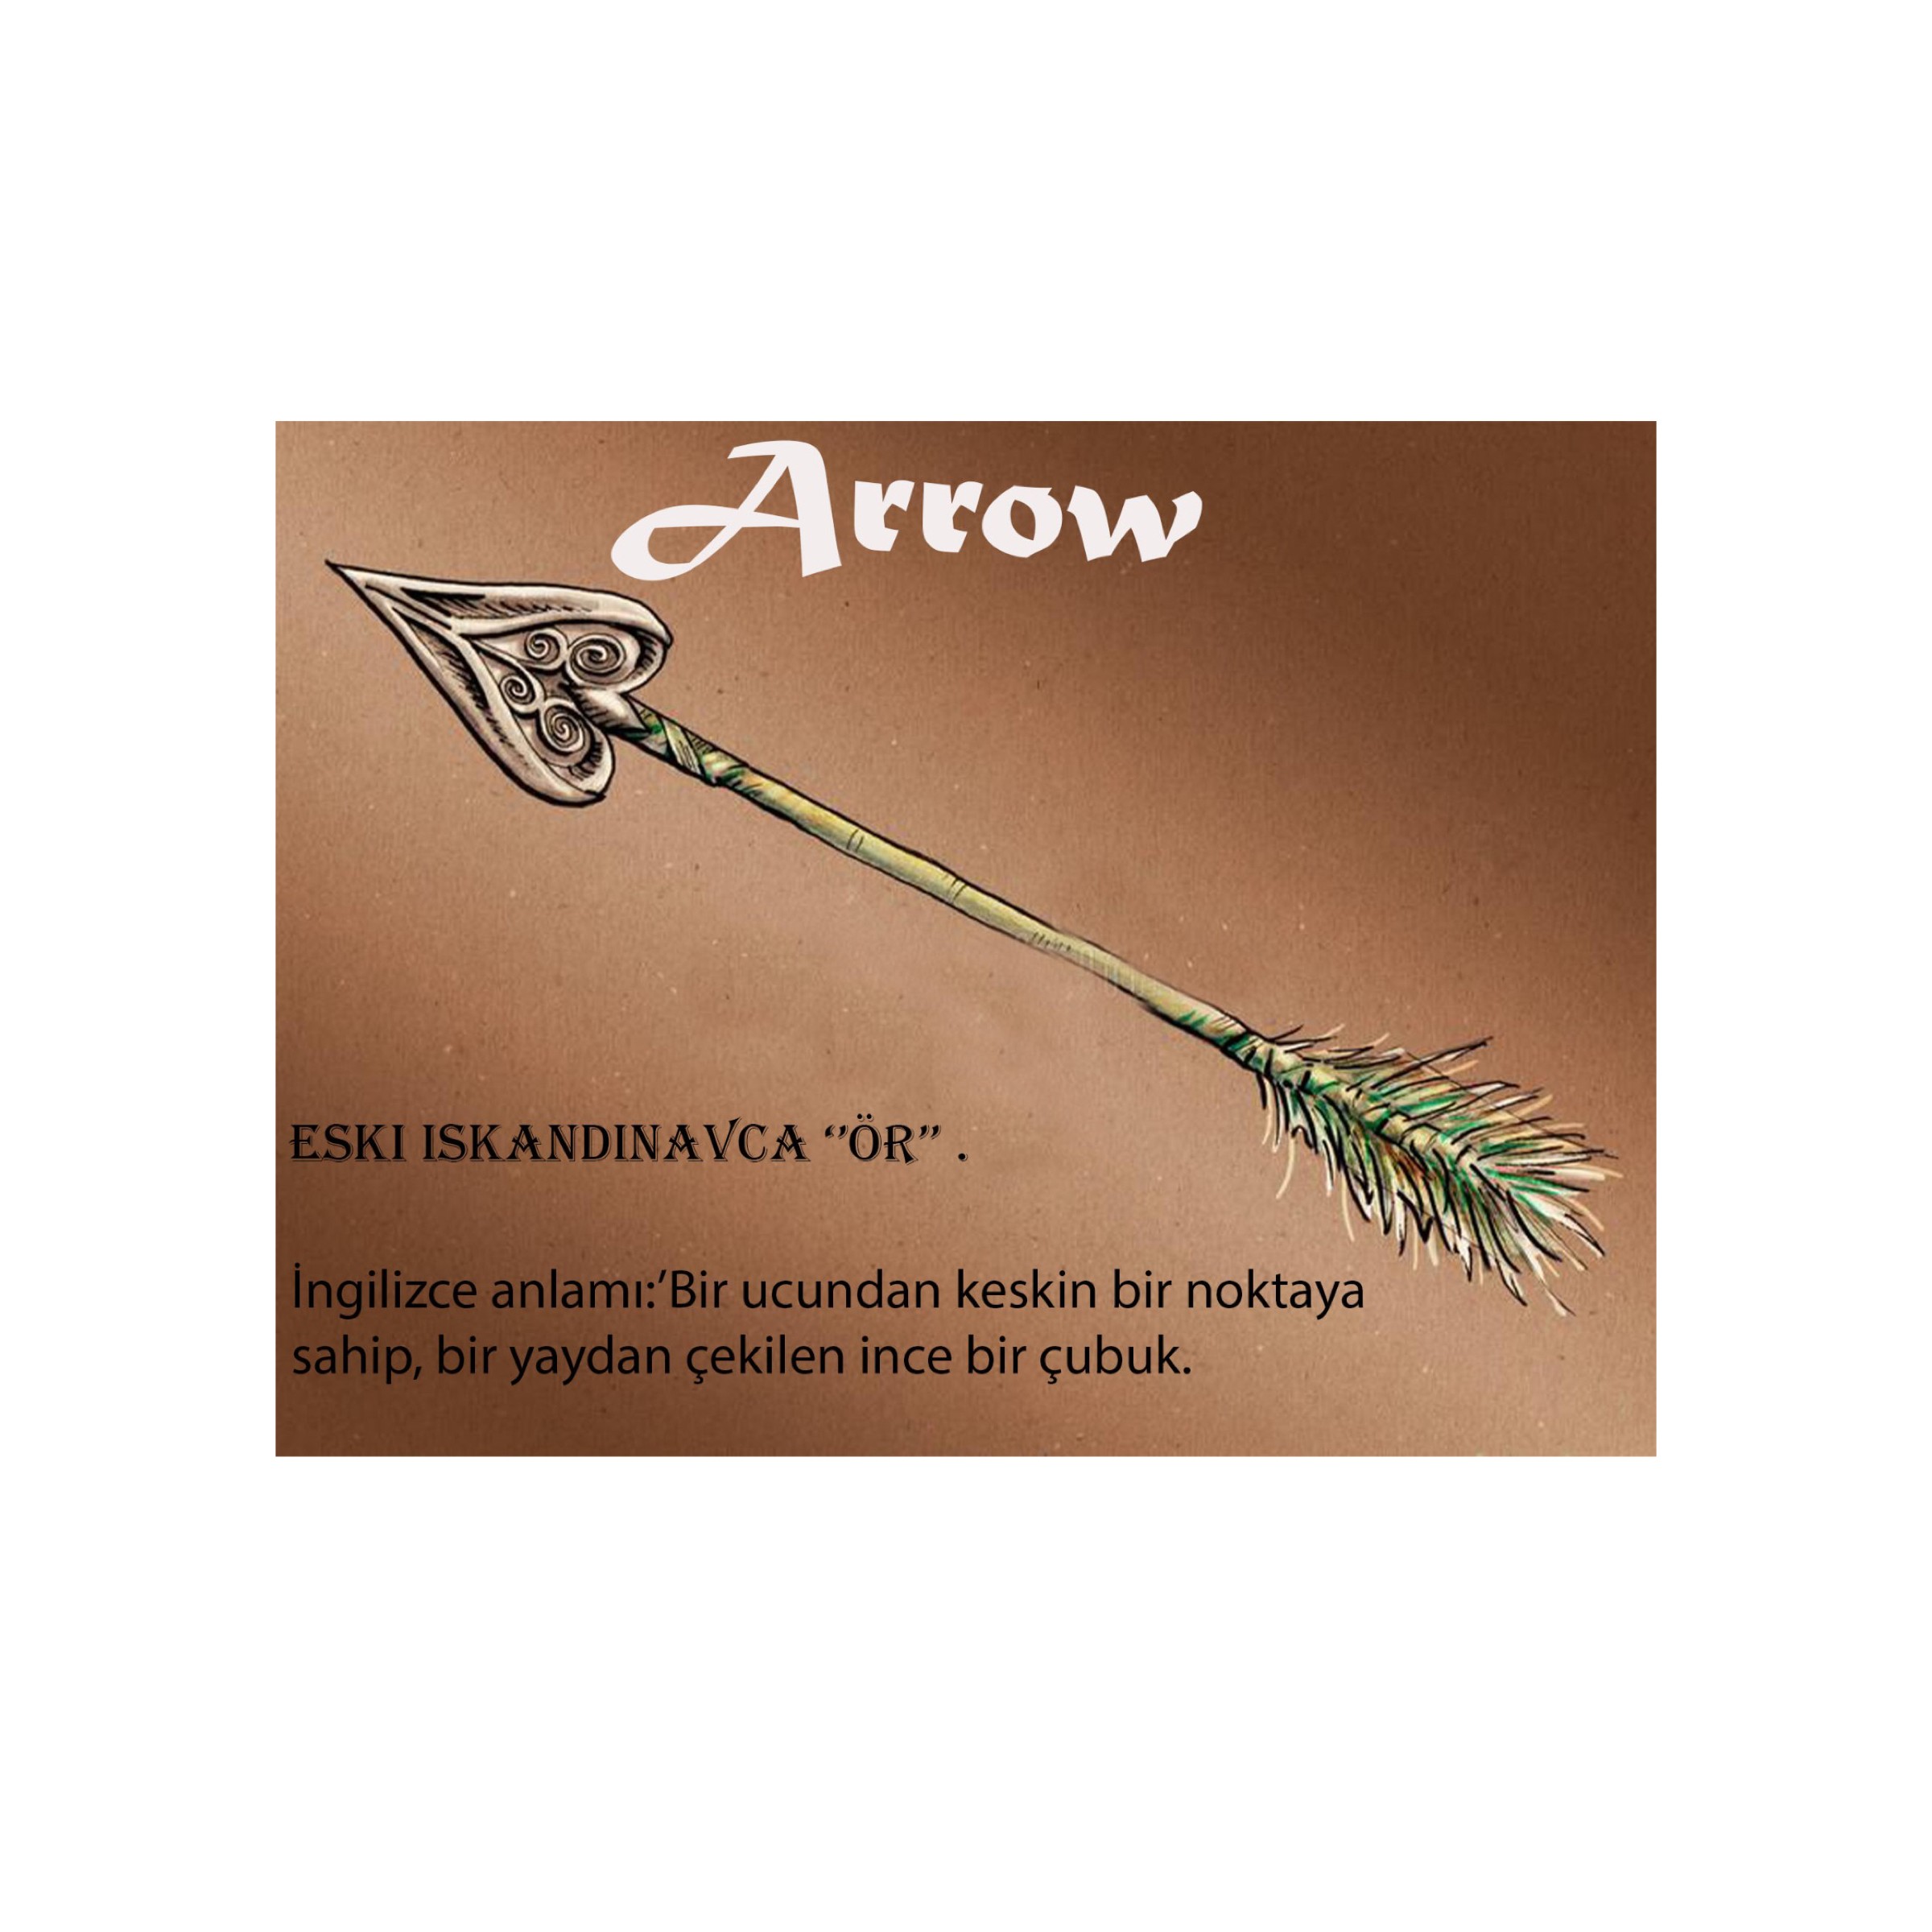 Etimolojik Çarşamba: Arrow